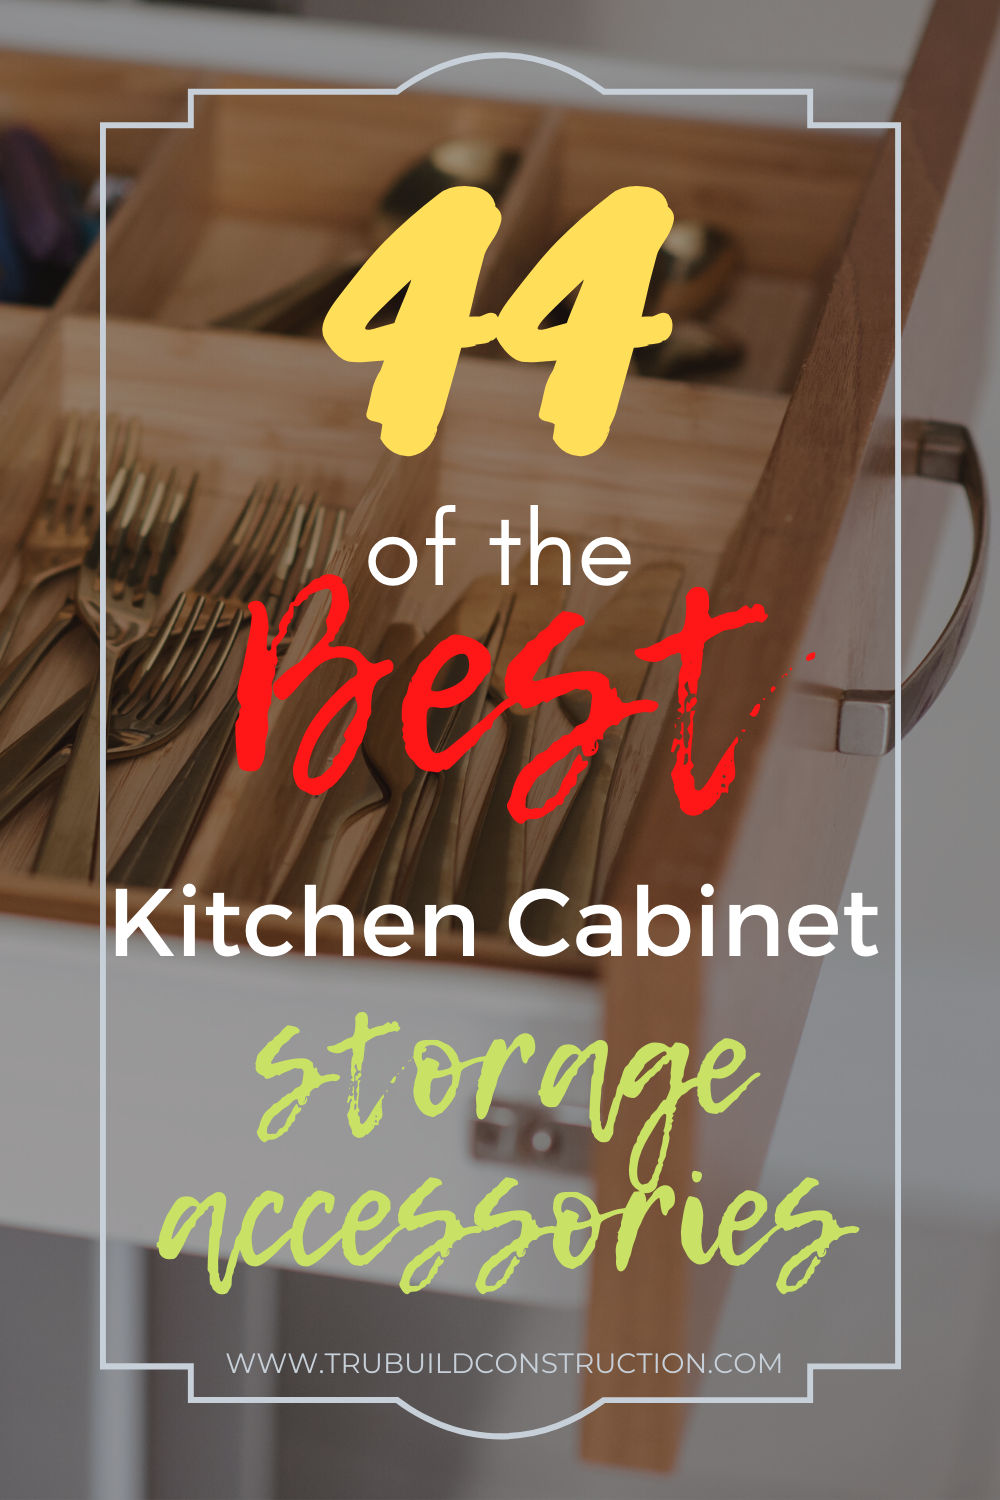 Afskrække slå oprindelse 44 of the Best Kitchen Cabinet Storage Accessories For Your Home — TruBuild  Construction